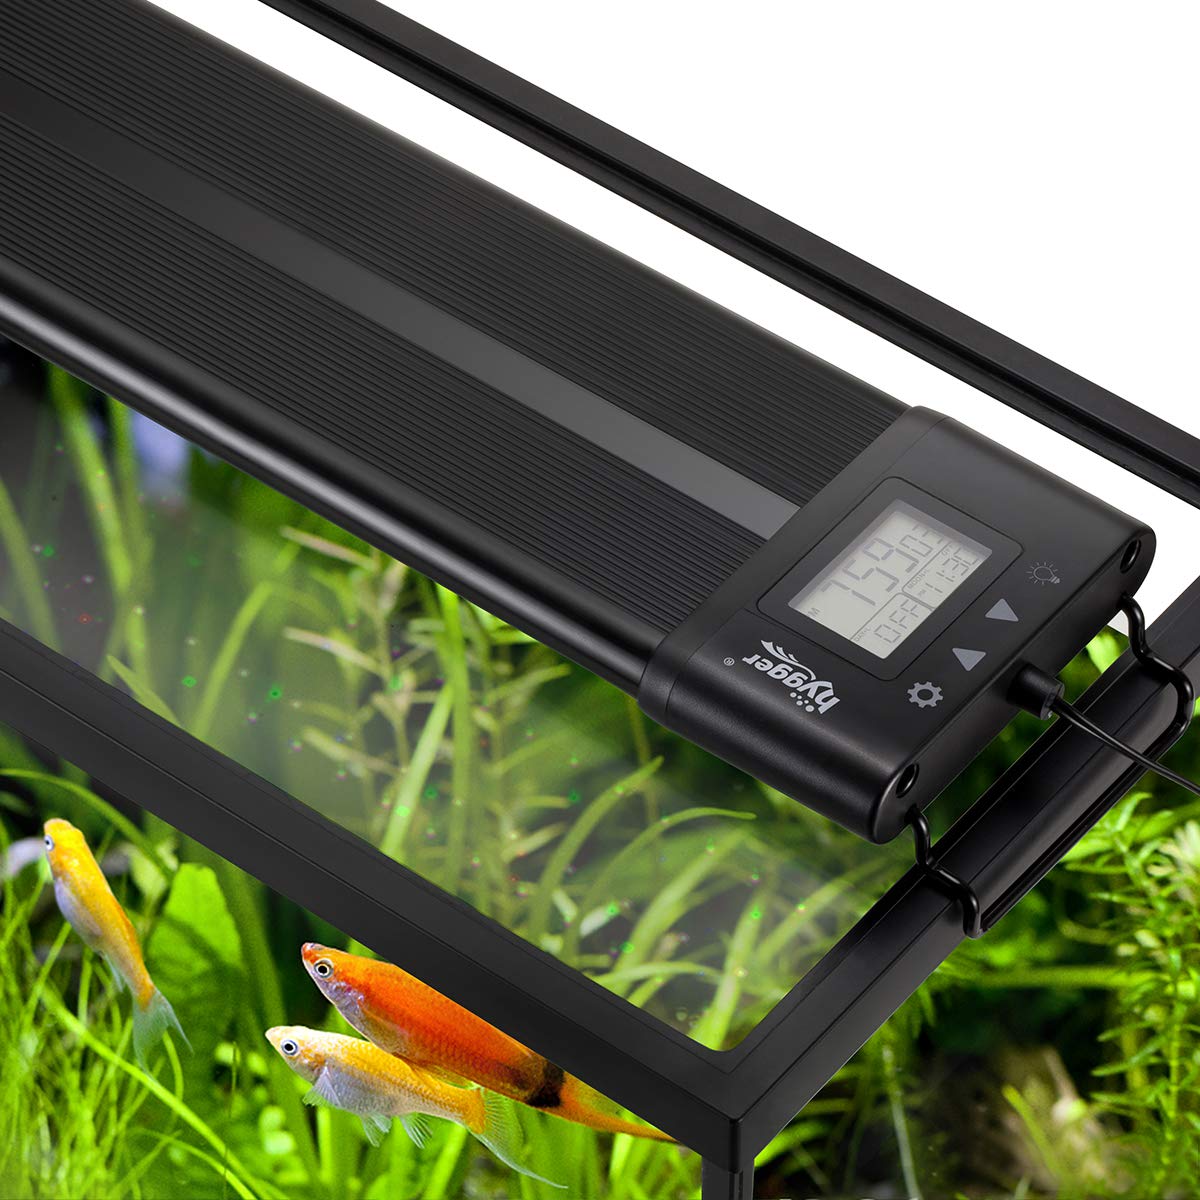 Hygger Auto On Off LED Aquarium Light: Extendable, Dimable, 7 Colors